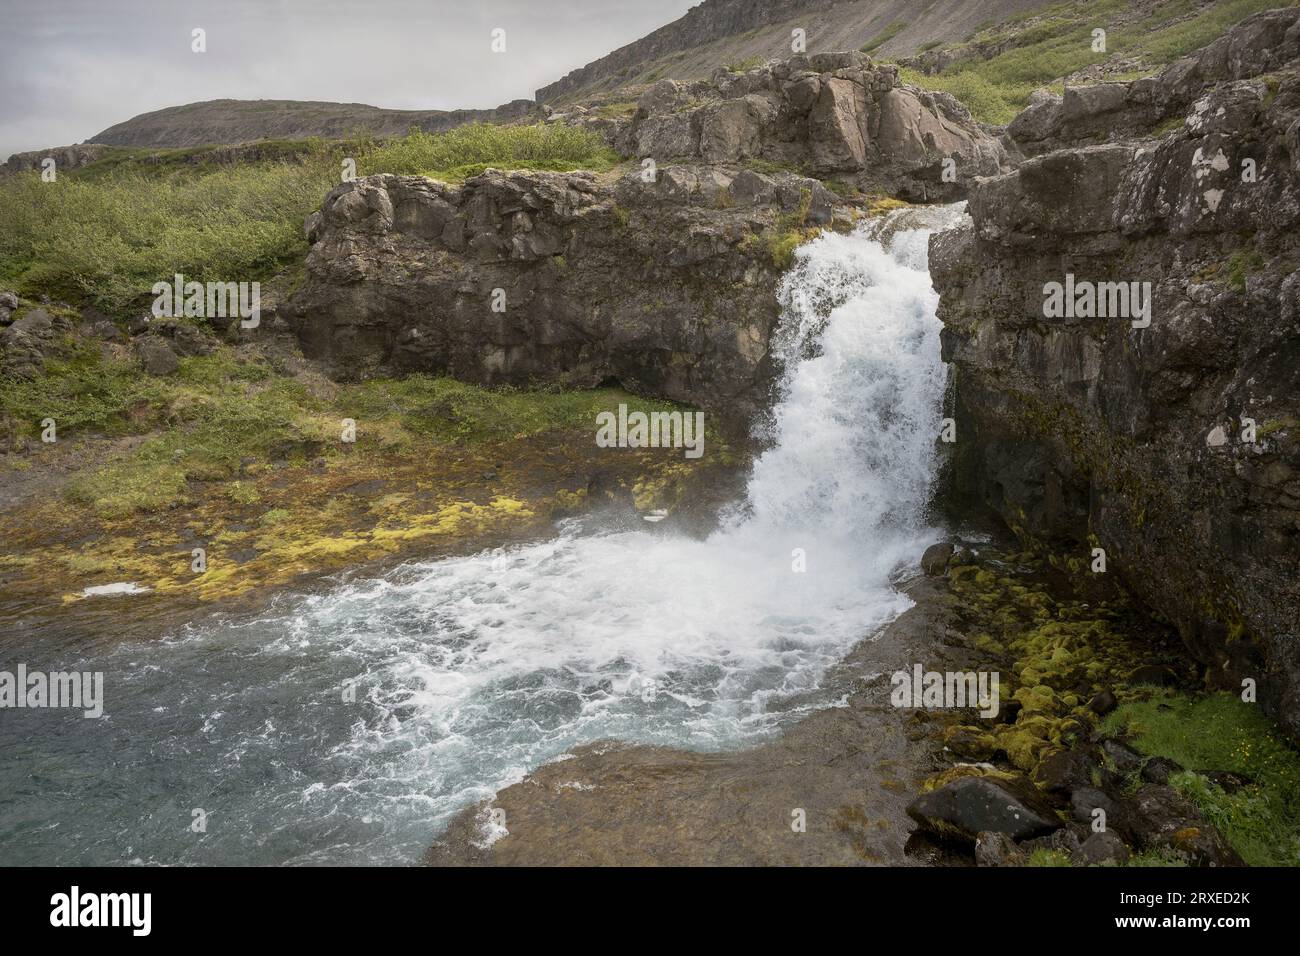 La cascata Gongumannafoss in Islanda scende drammaticamente su una scogliera verticale circondata da vegetazione tundra con un cielo nuvoloso sullo sfondo Foto Stock